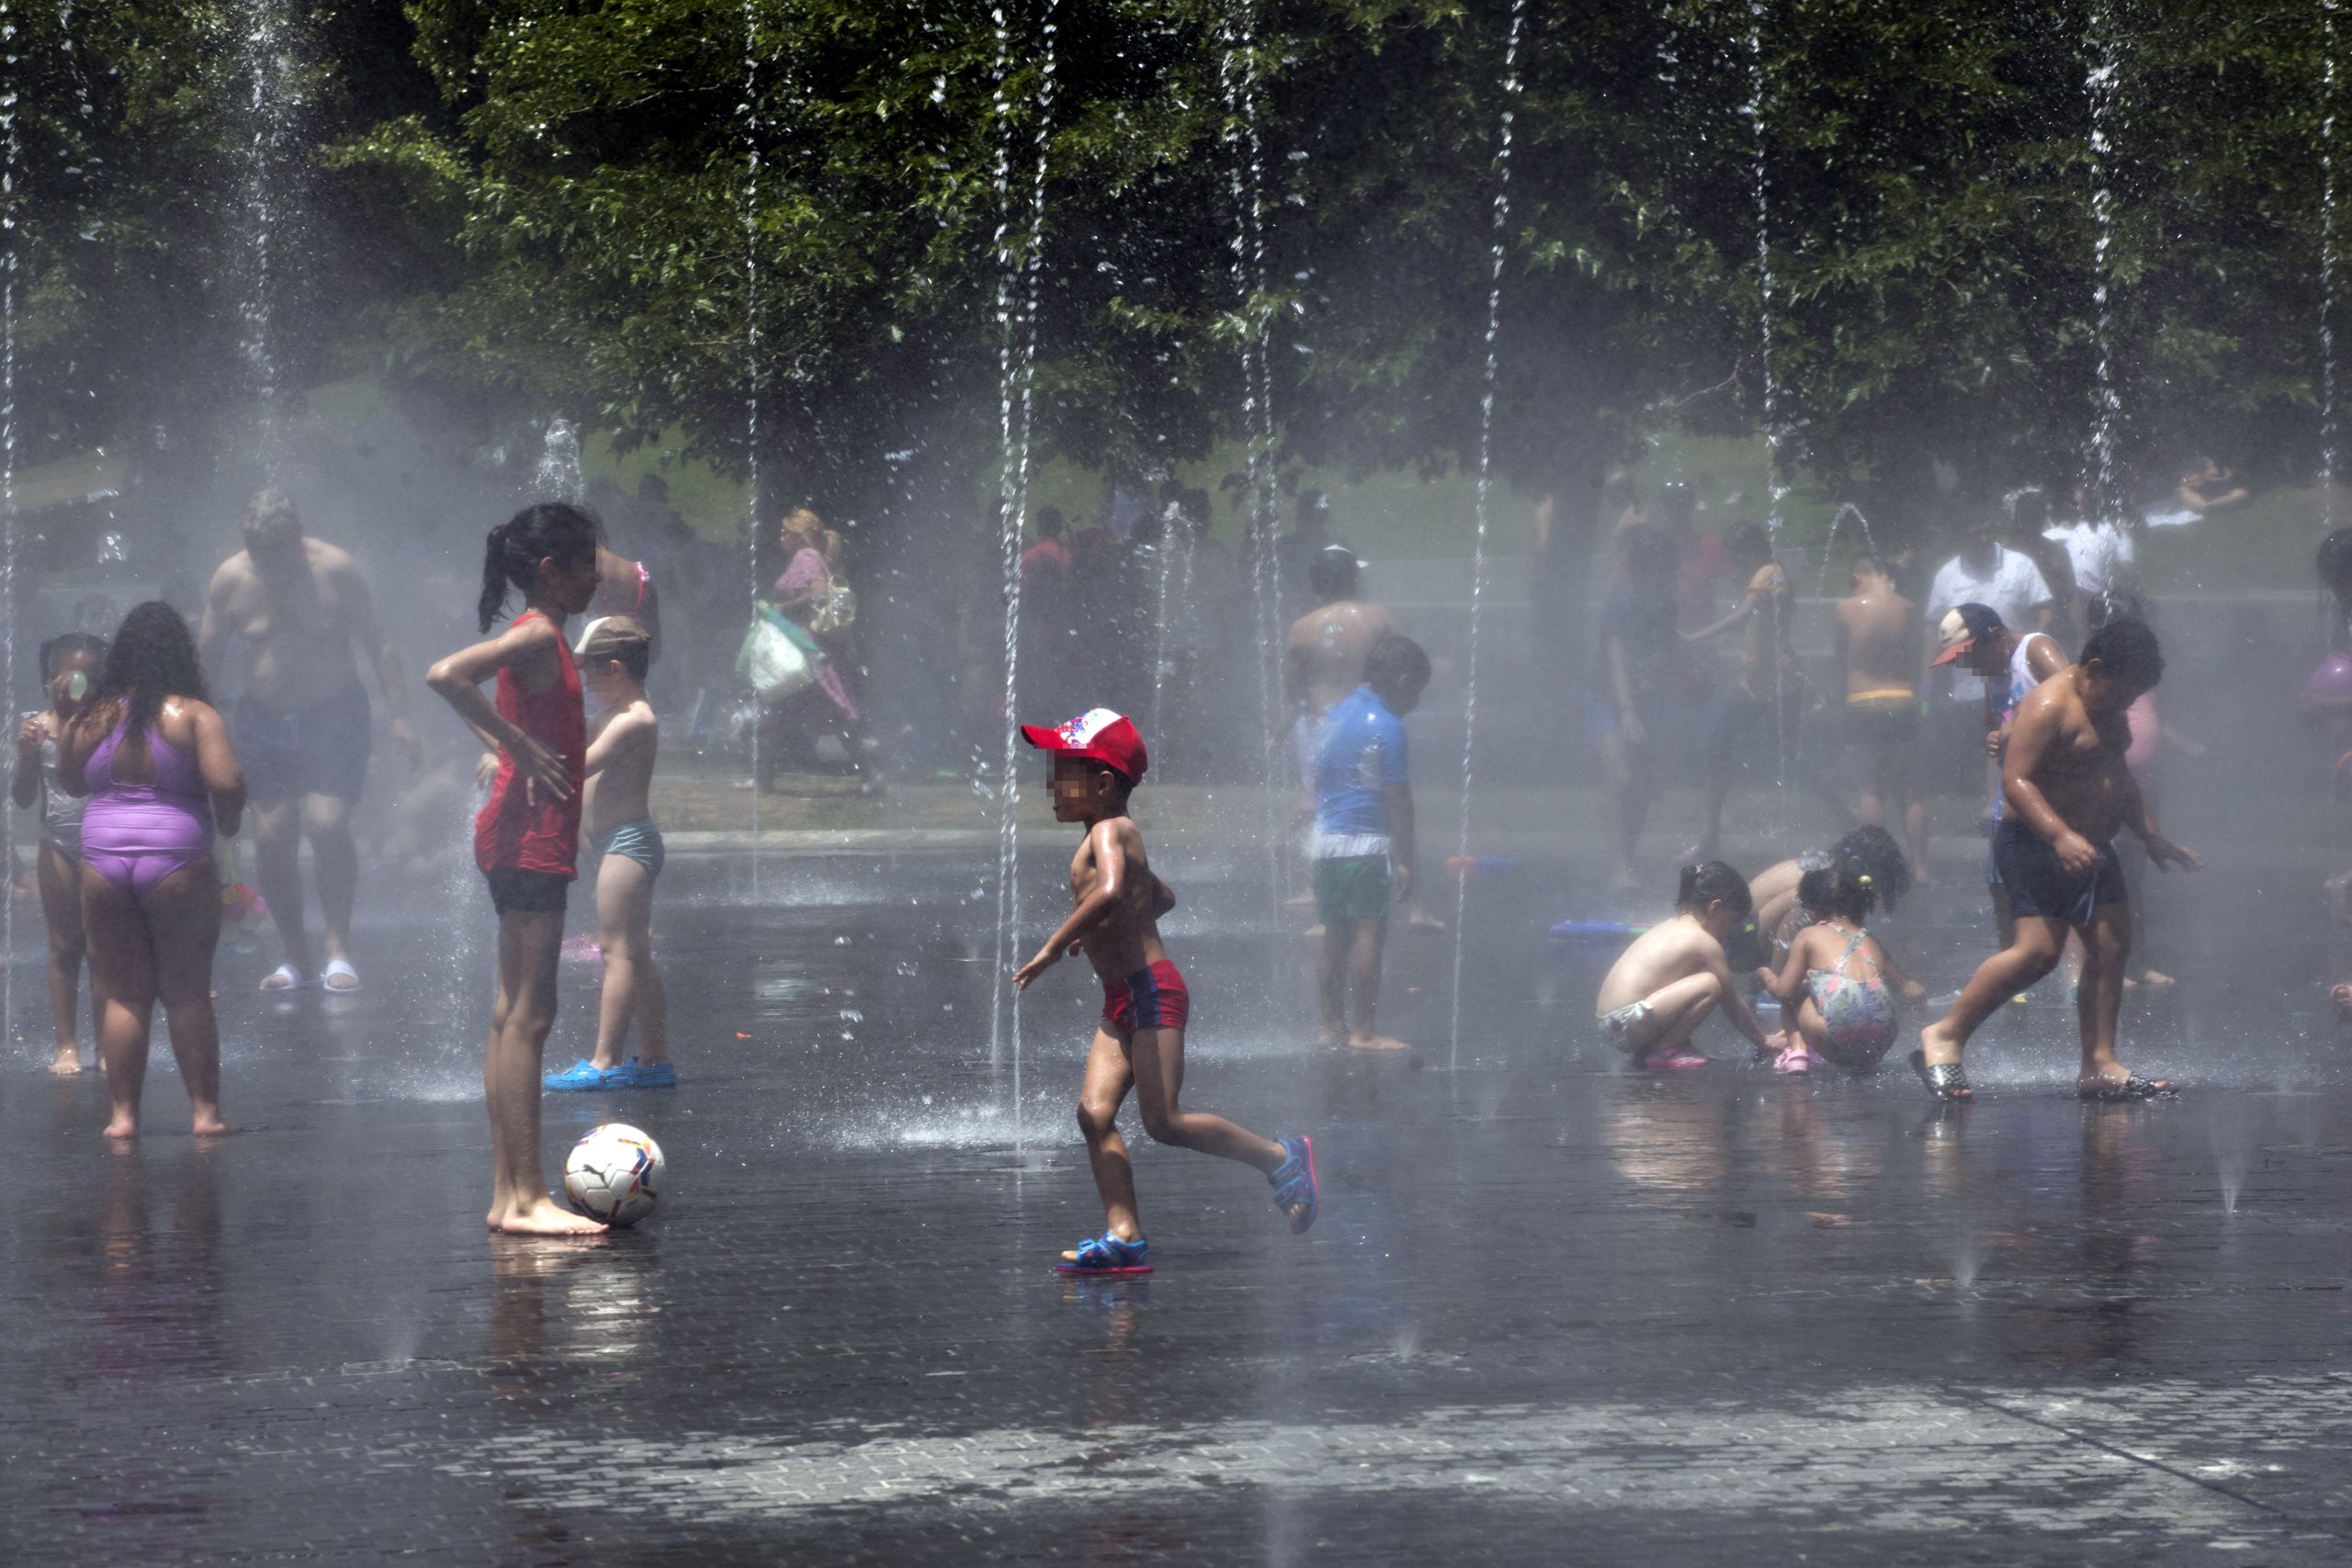 Para 2050 los niños de todo el mundo sufrirán olas de calor más extremas y frecuentes